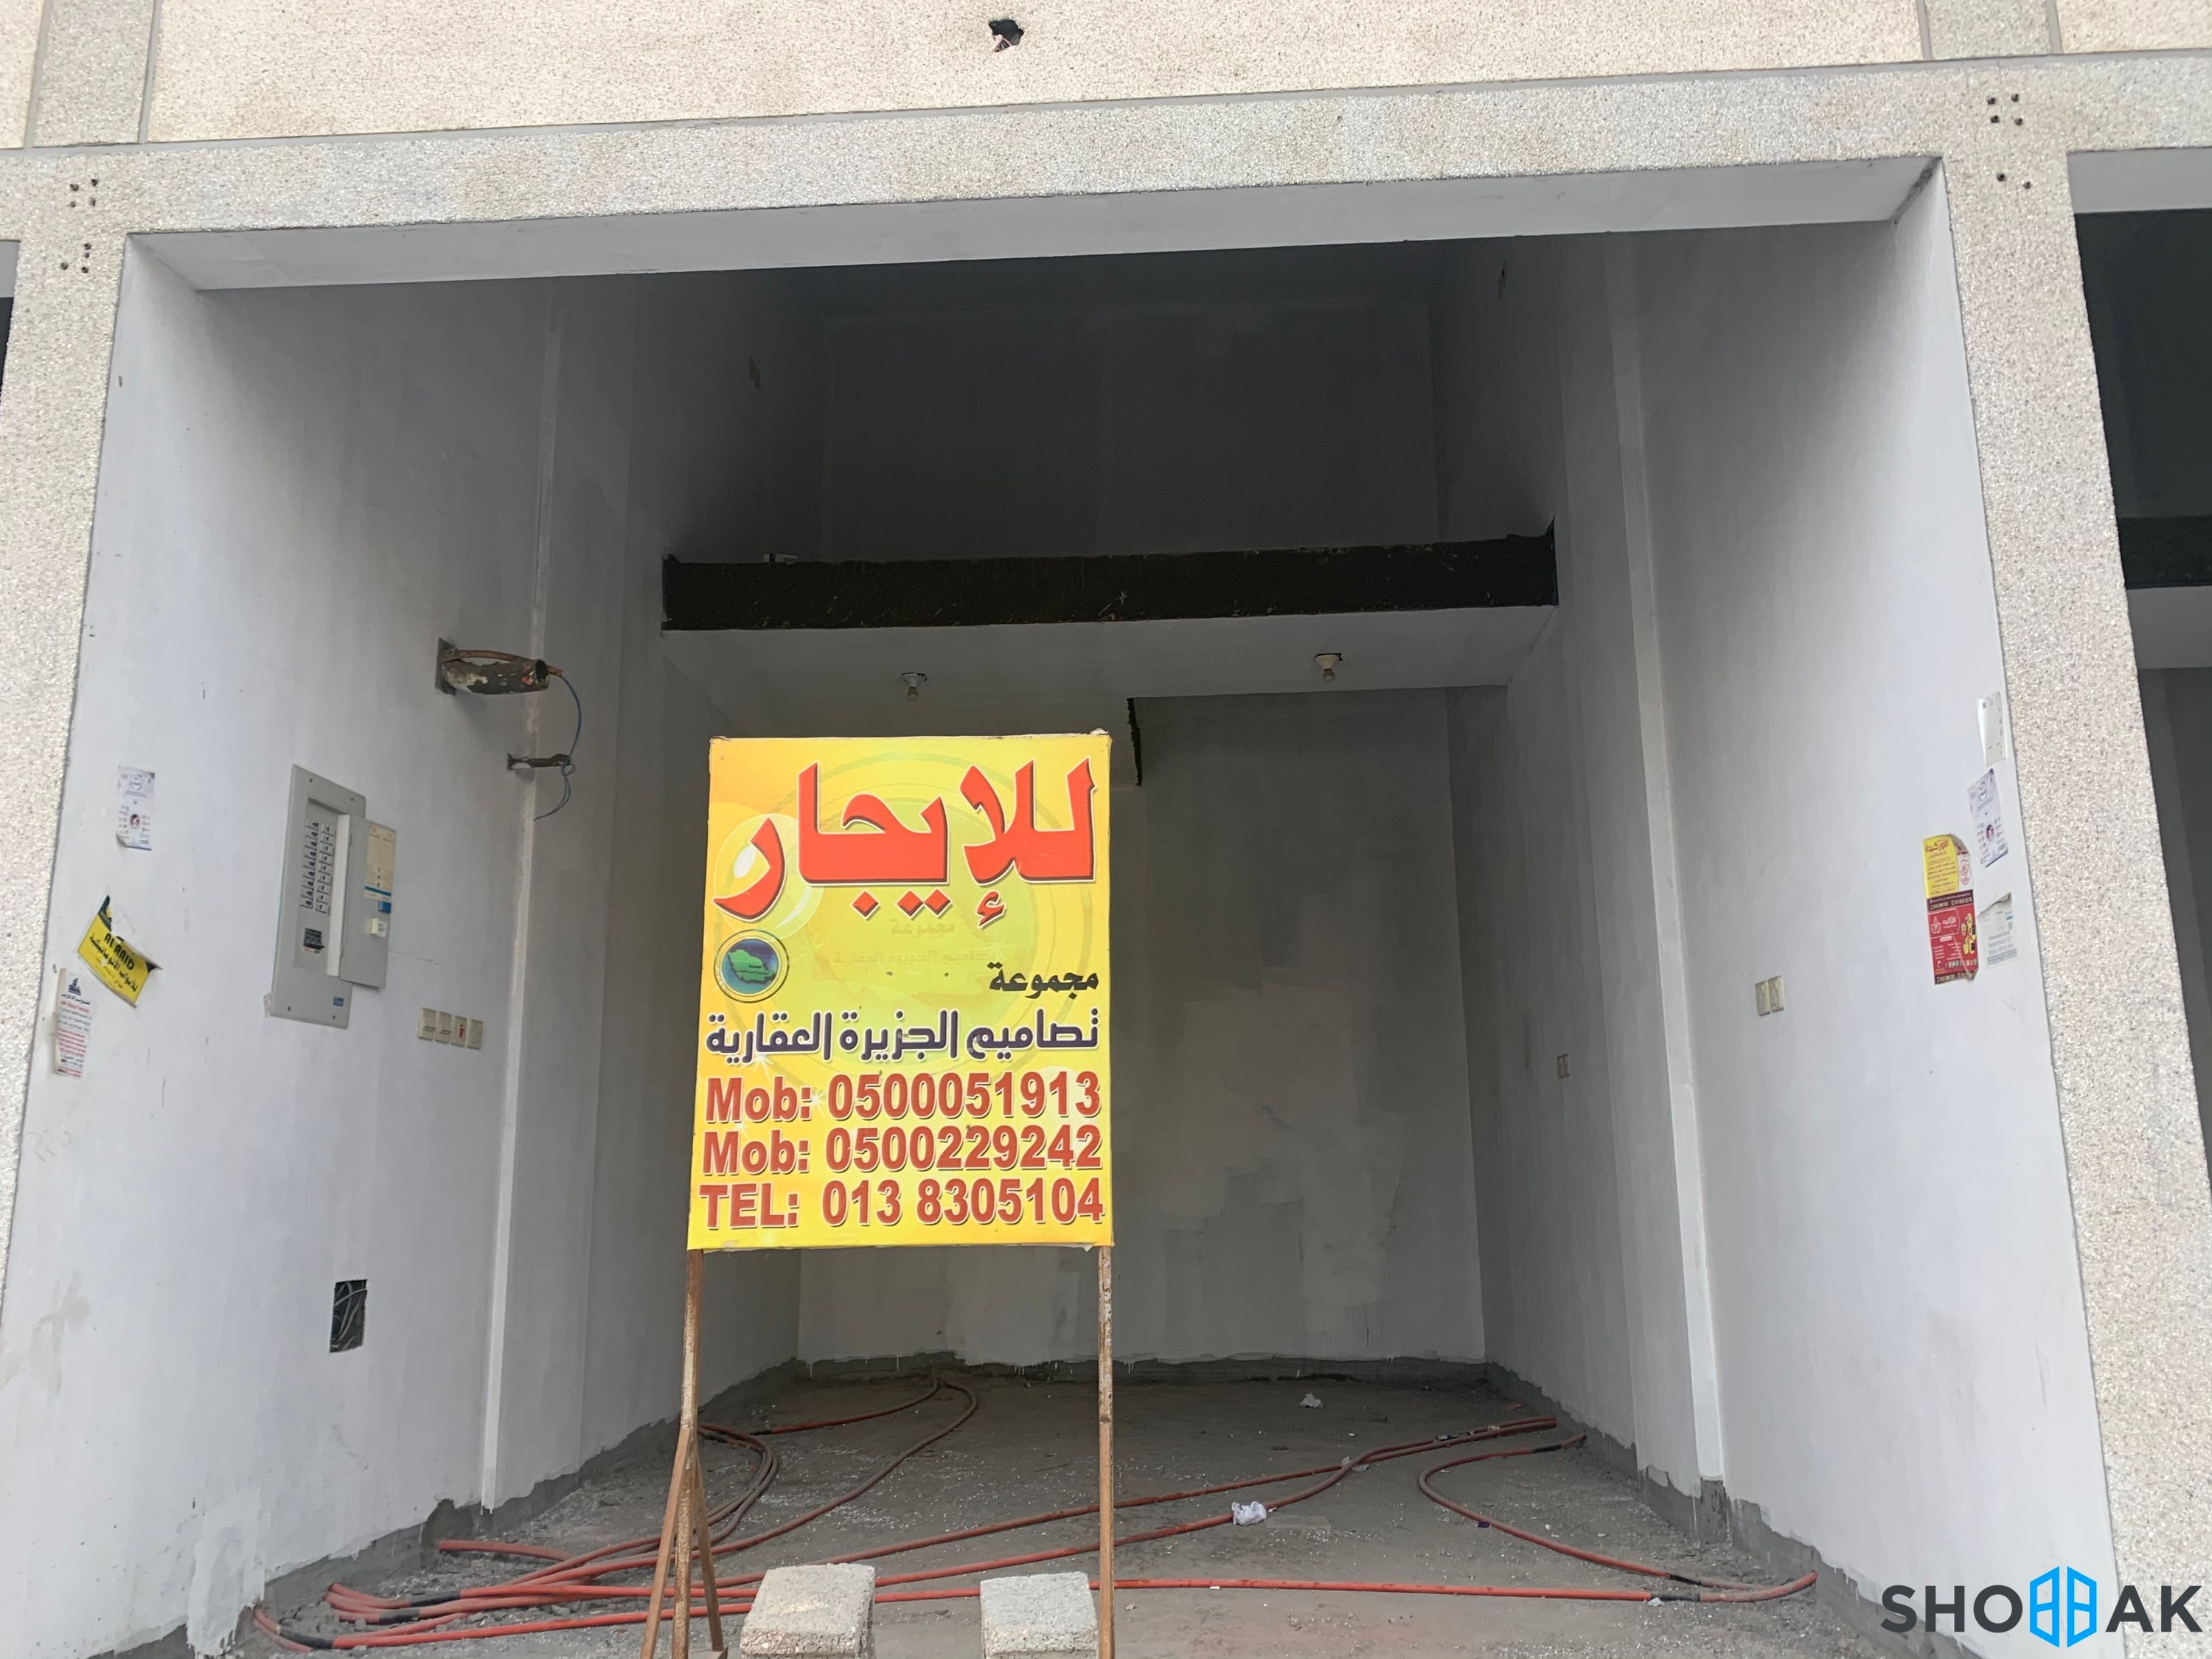 محل للإيجار الدمام حي طيبة Shobbak Saudi Arabia